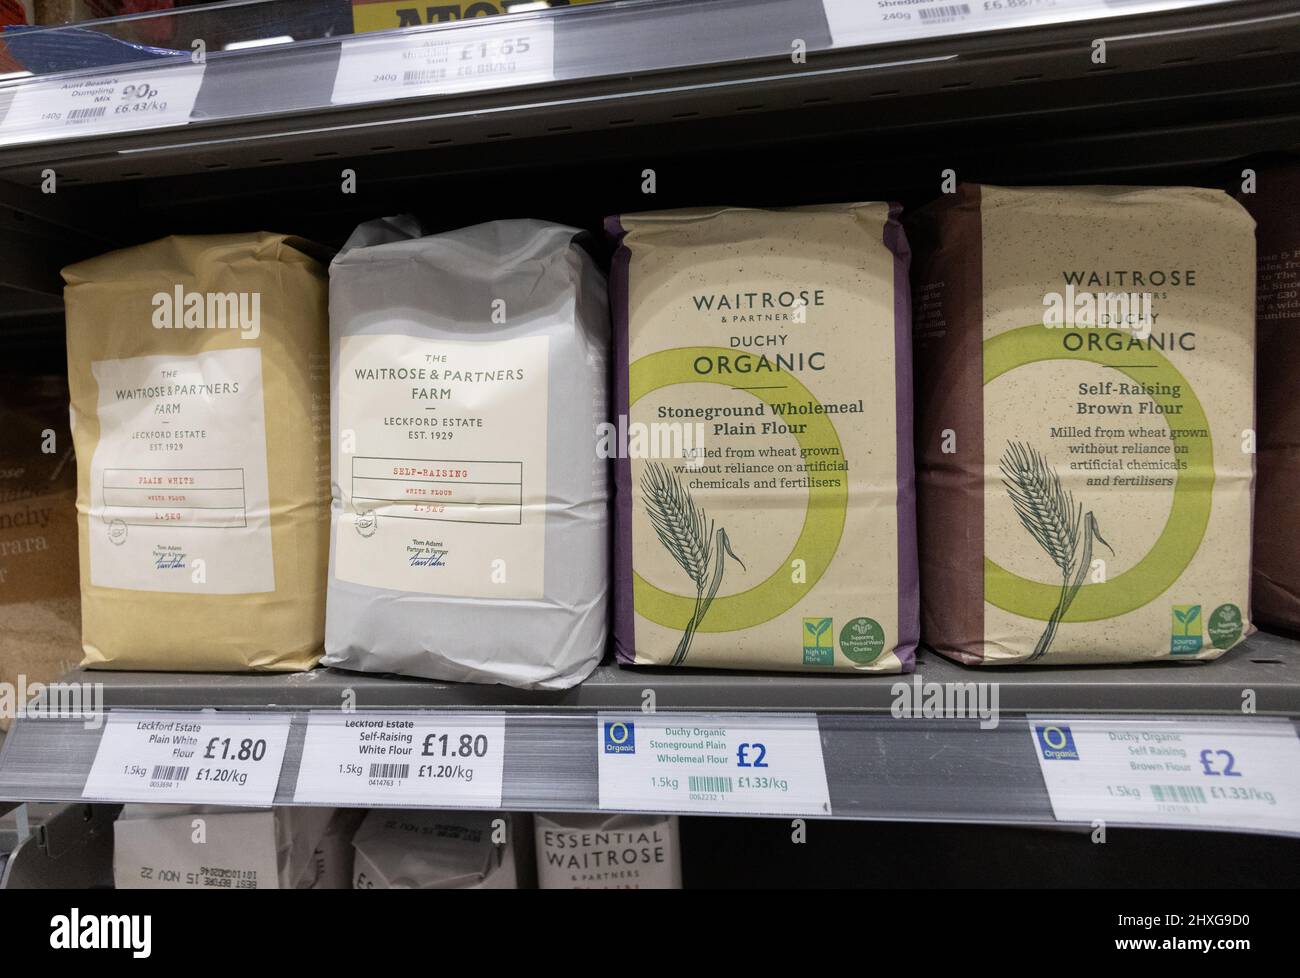 Farina per supermercati UK; sacchetti di farina per la vendita su scaffali per supermercati Waitrose nel Regno Unito Foto Stock